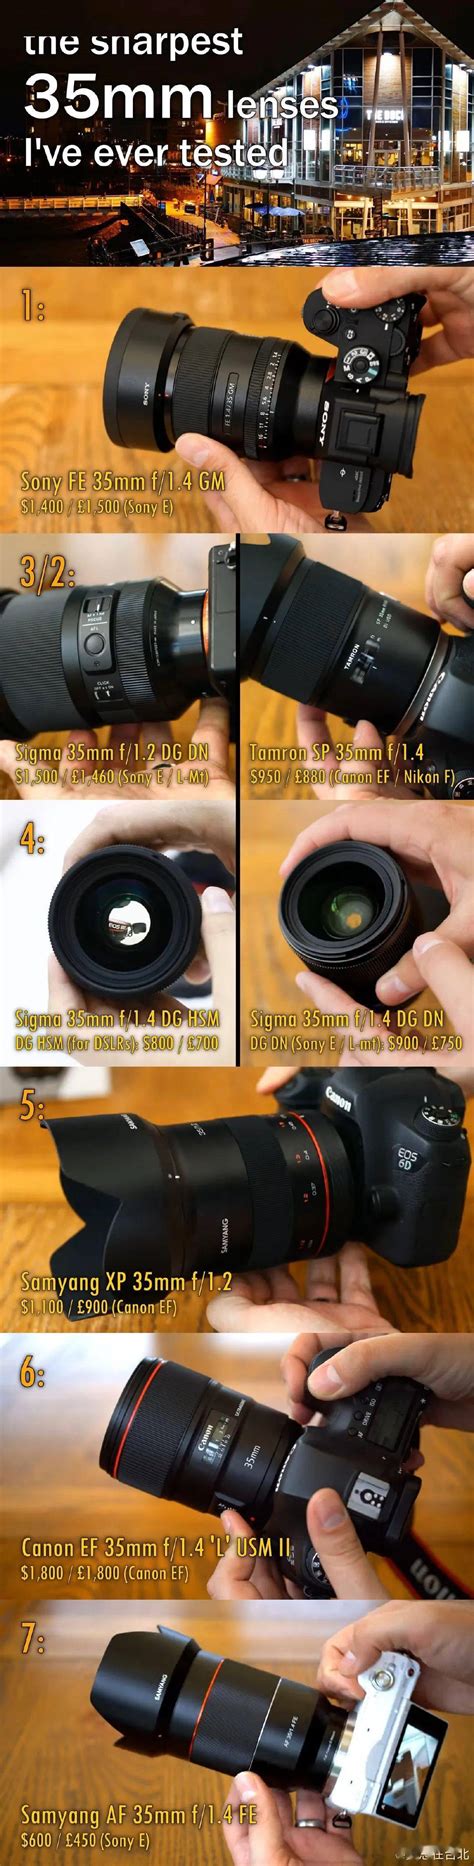 大光圈 轻量化 索尼FE 35mm F1.8全幅镜头发布-影像中国网-中国摄影家协会主办